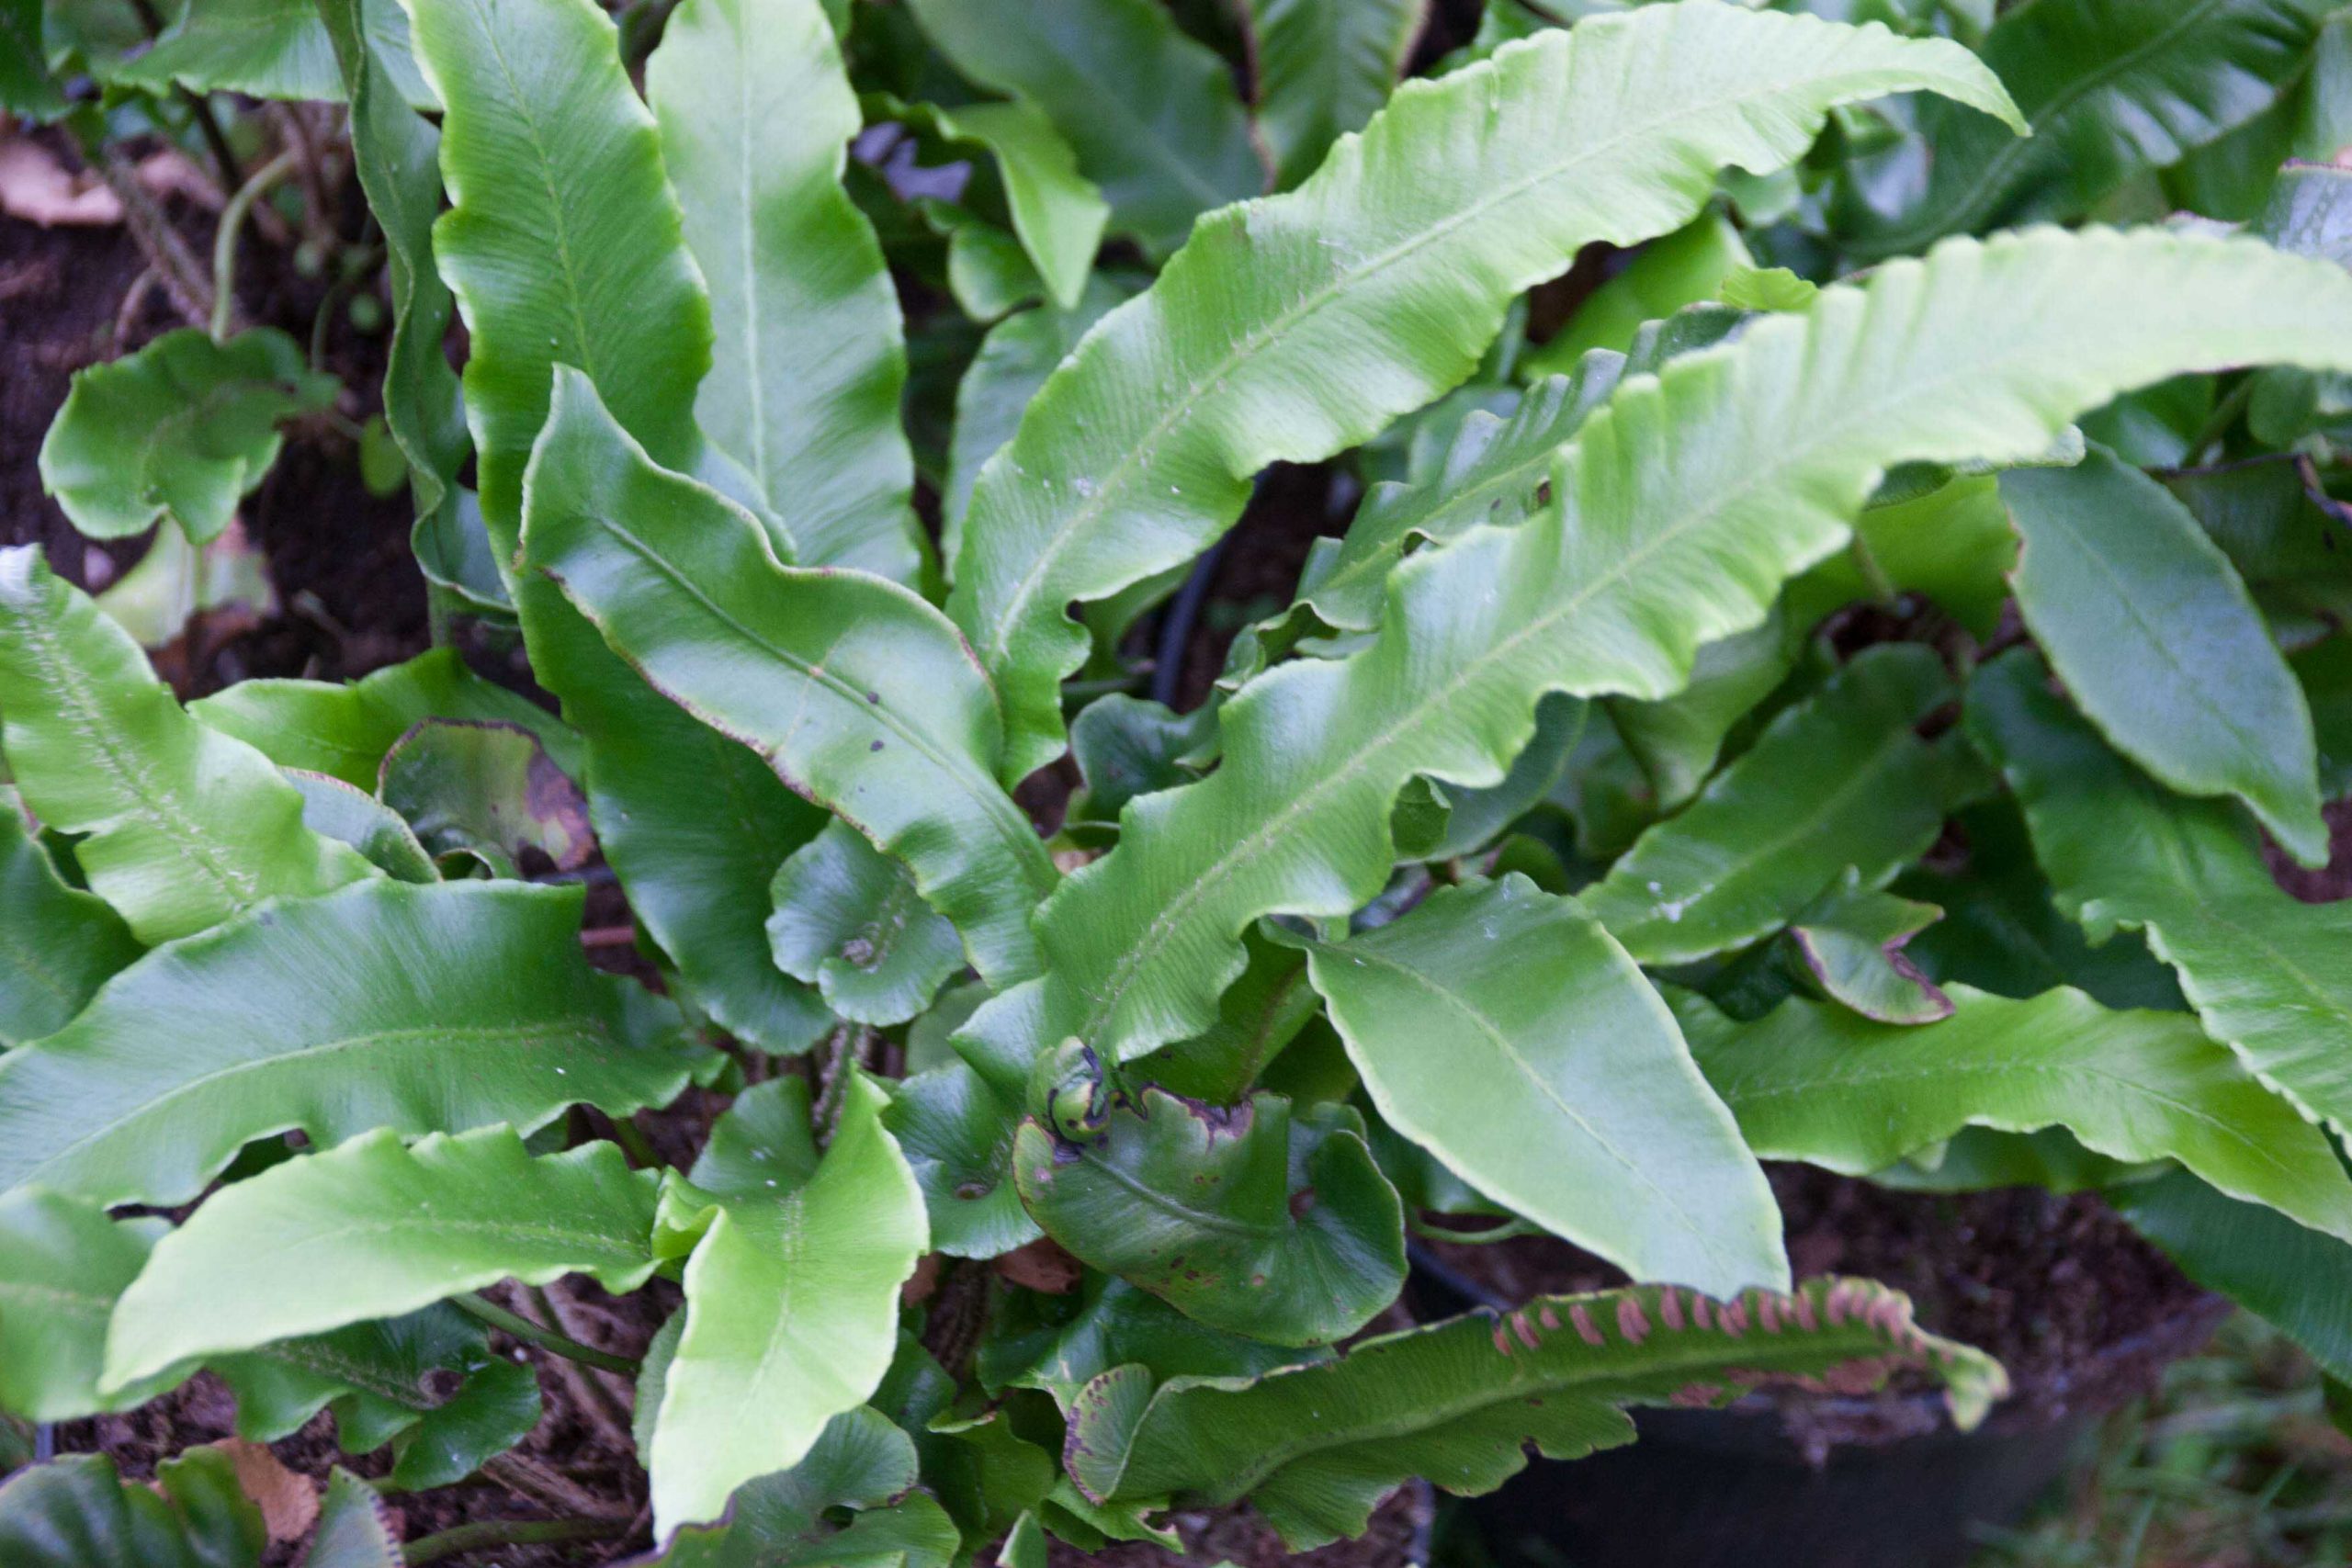 Tongvaren - Asplenium scolopendrium : Plant in P9 pot